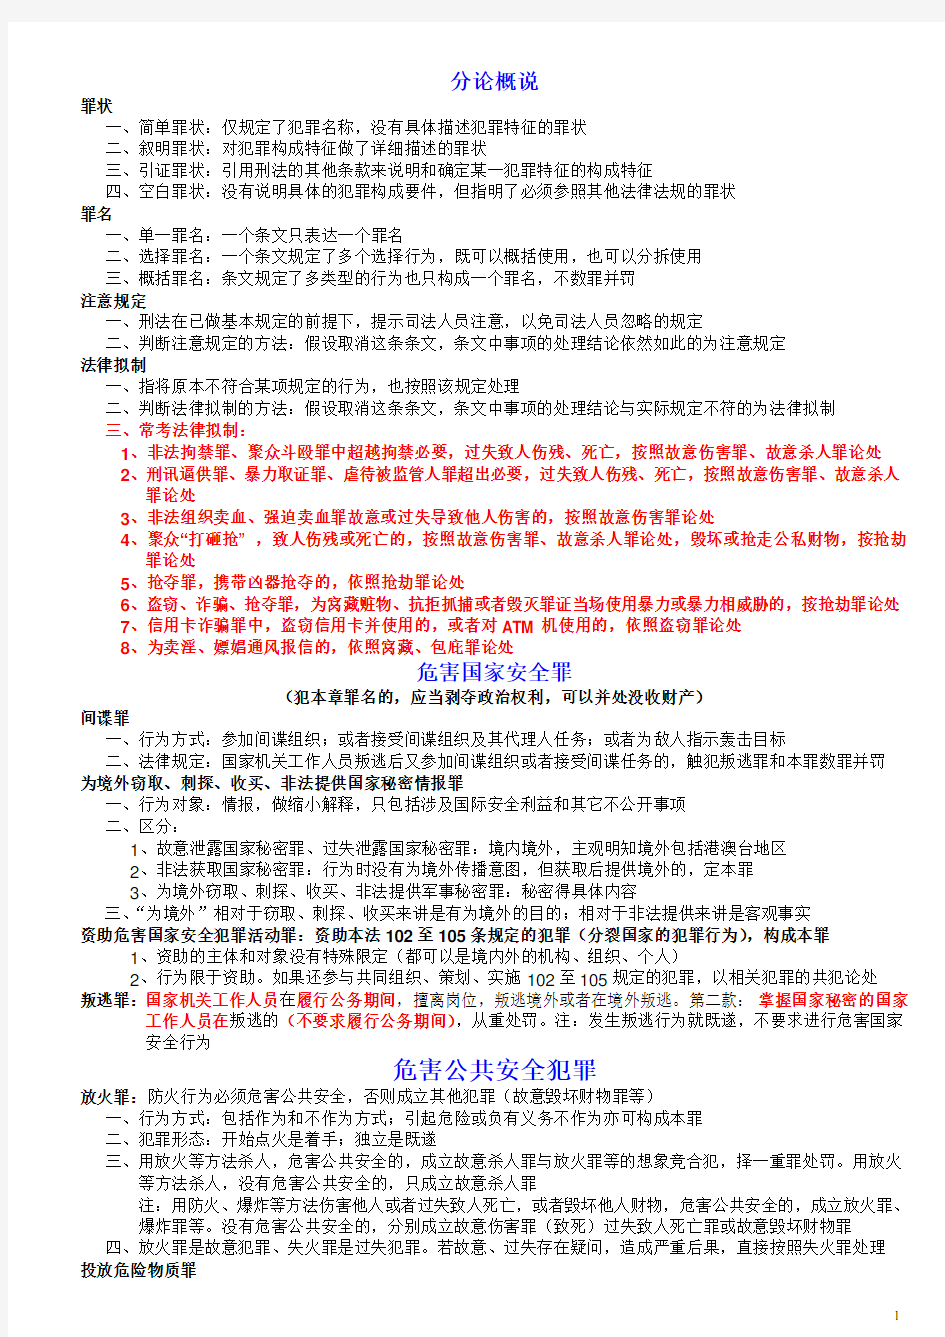 2015司法考试刑法分则笔记(刘凤科讲义摘录)